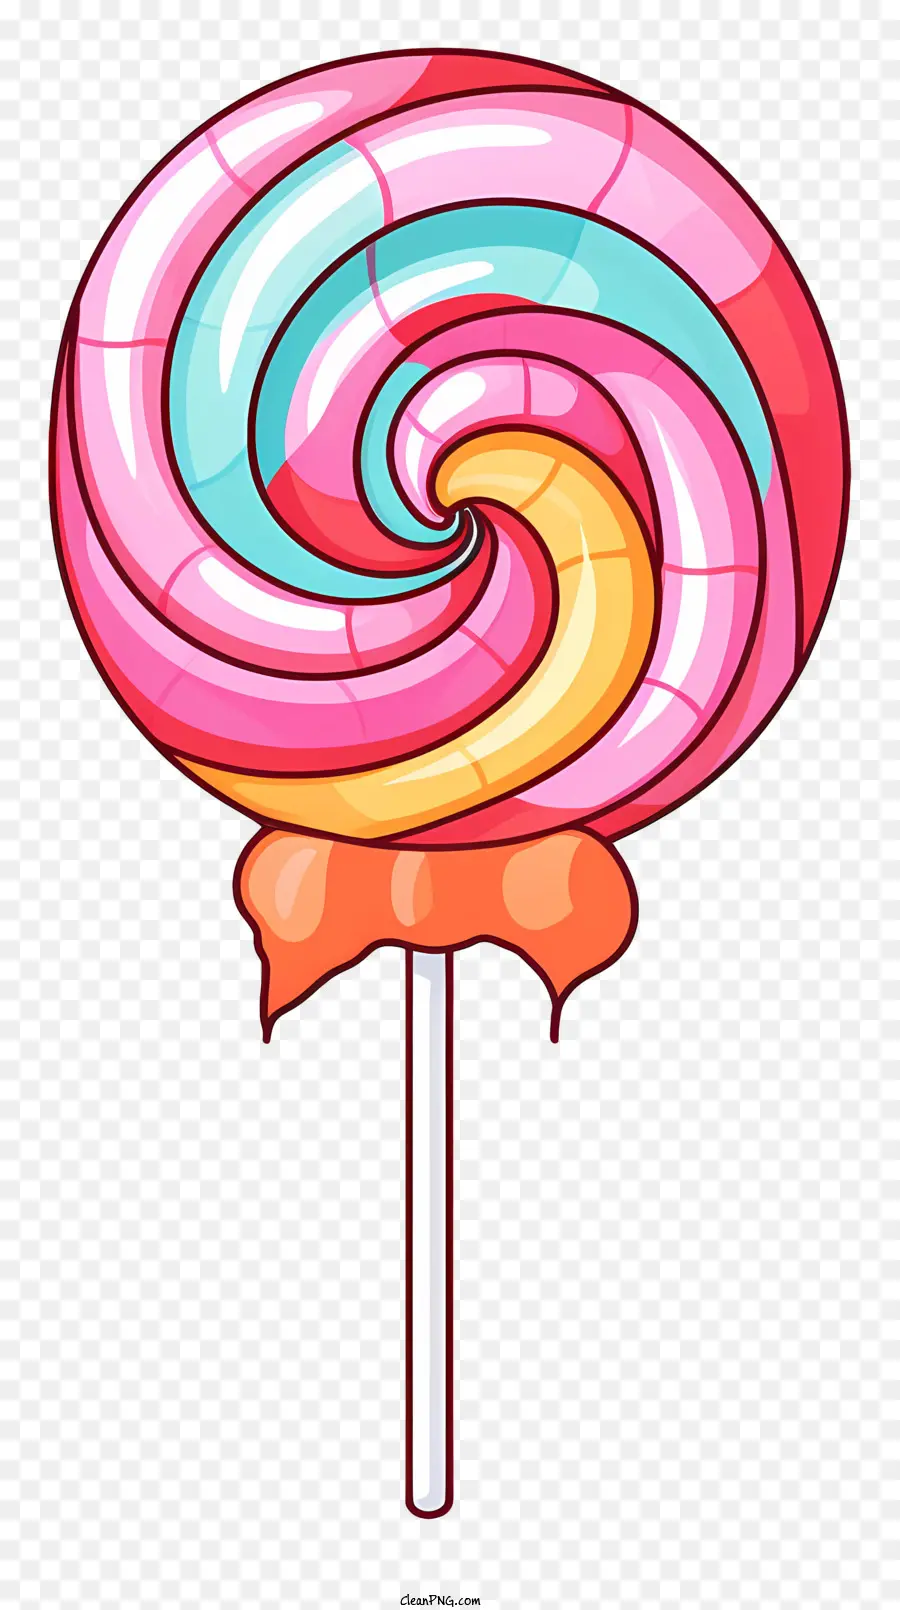 Lollipop Rainbow Wirbig farbenfrohe Kindheit Nostalgie Glück - Buntes Lutscher symbolisiert Glück und Nostalgie in der Kindheit